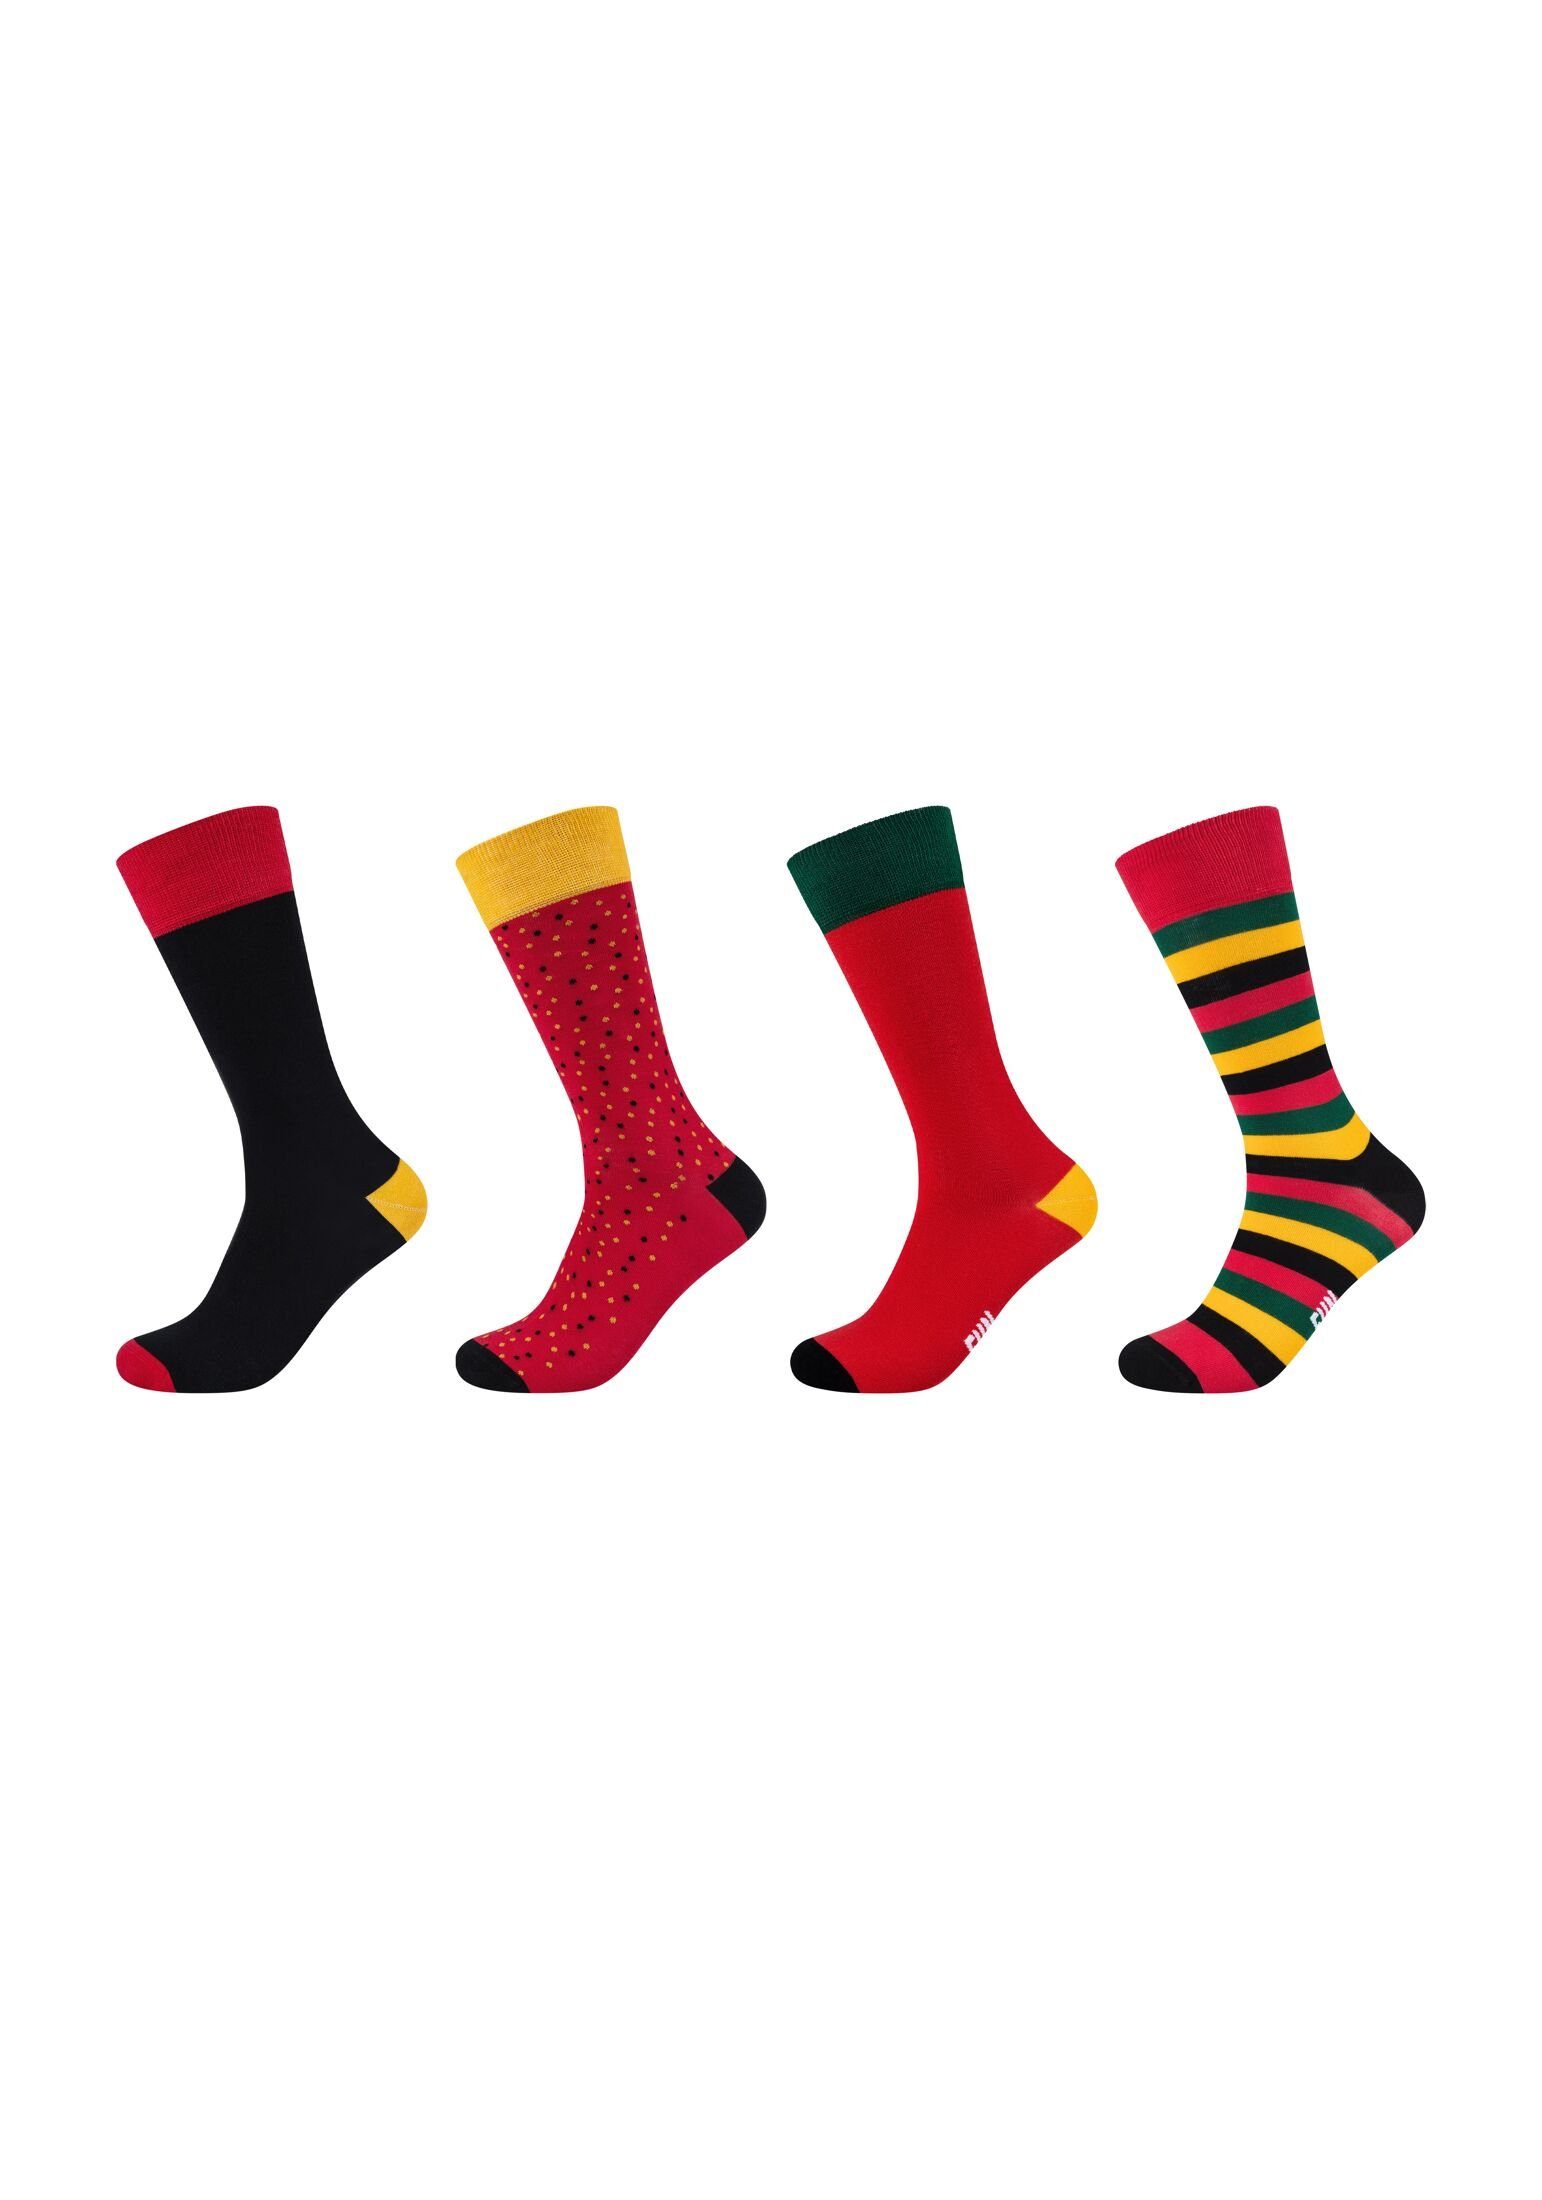 Fun Socks Socken Socken 4er Pack aurora red